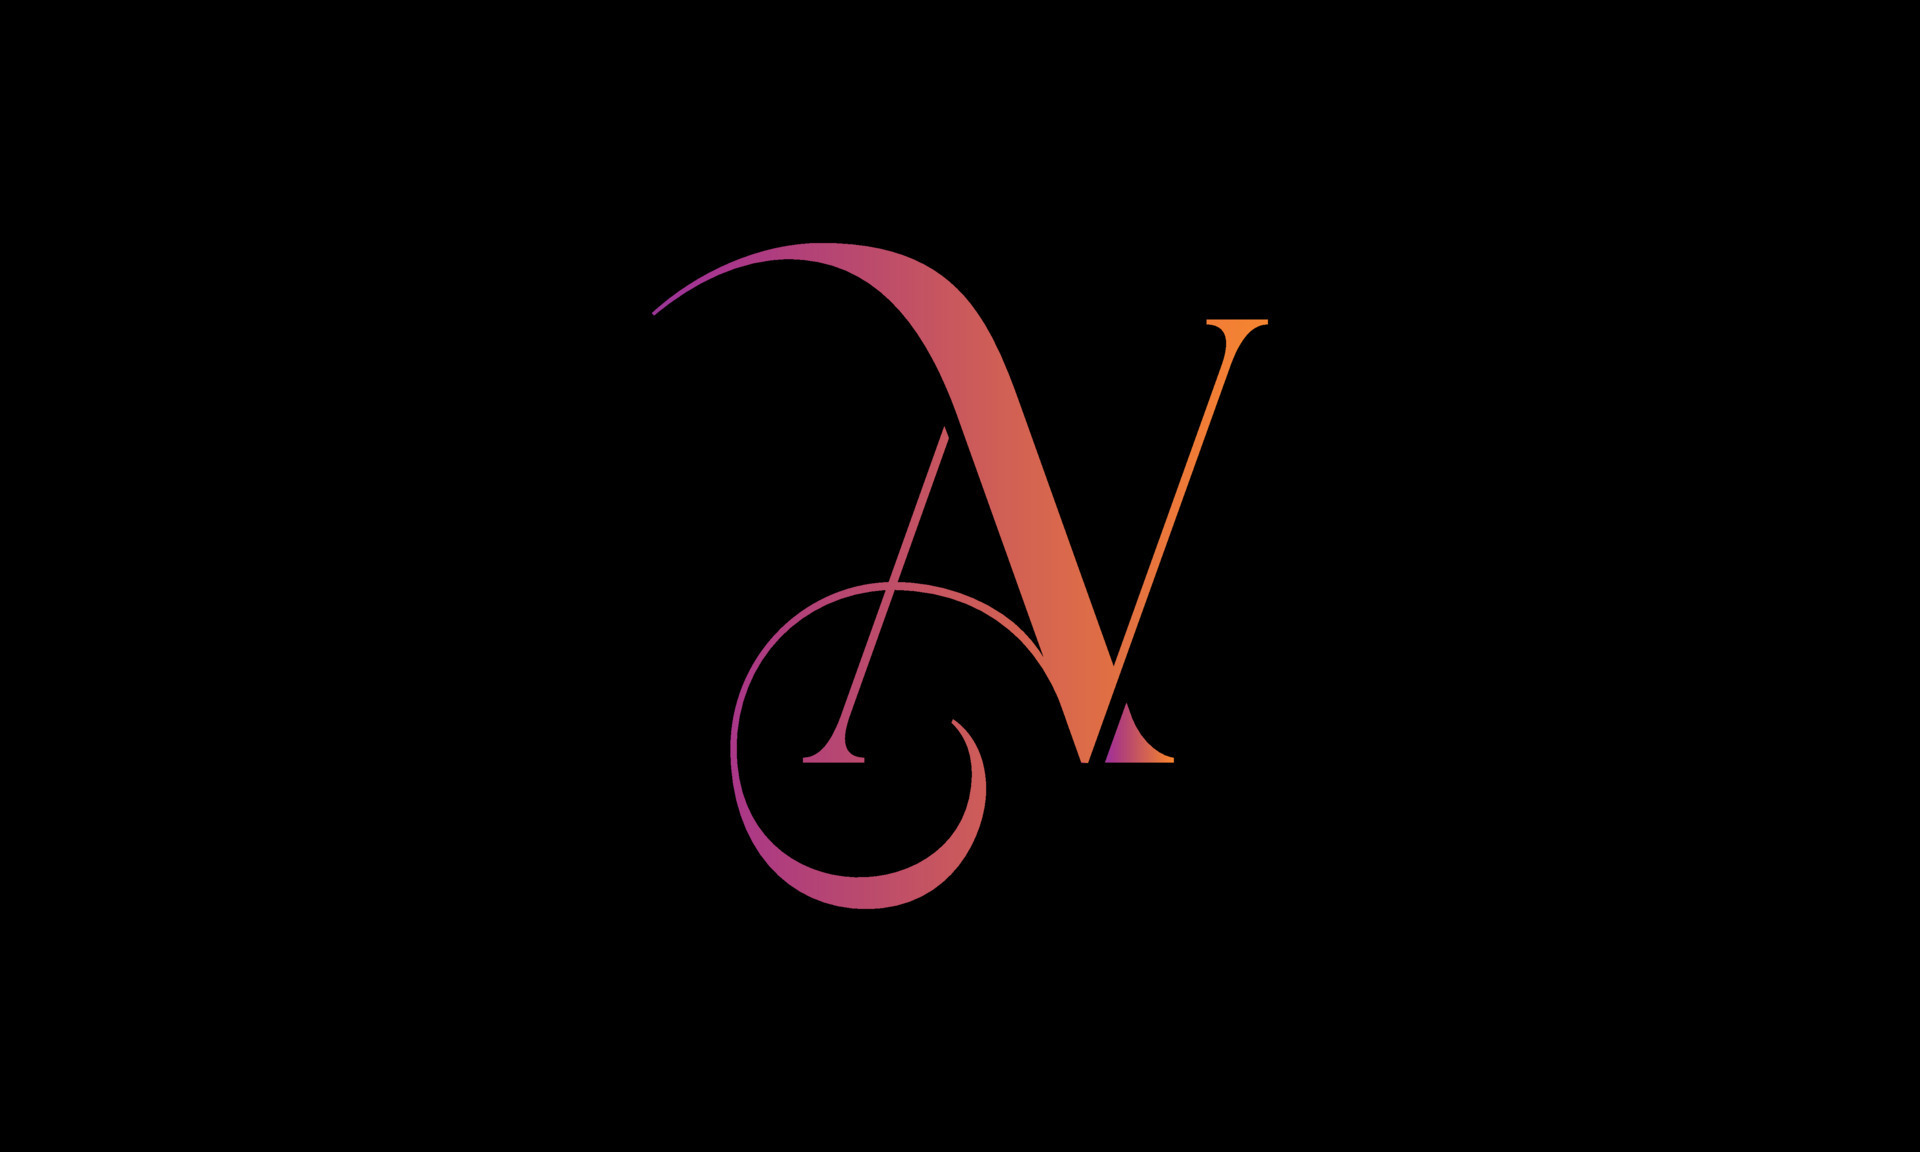 AV Letter logo icon design template elements - stock vector 2923905 |  Crushpixel